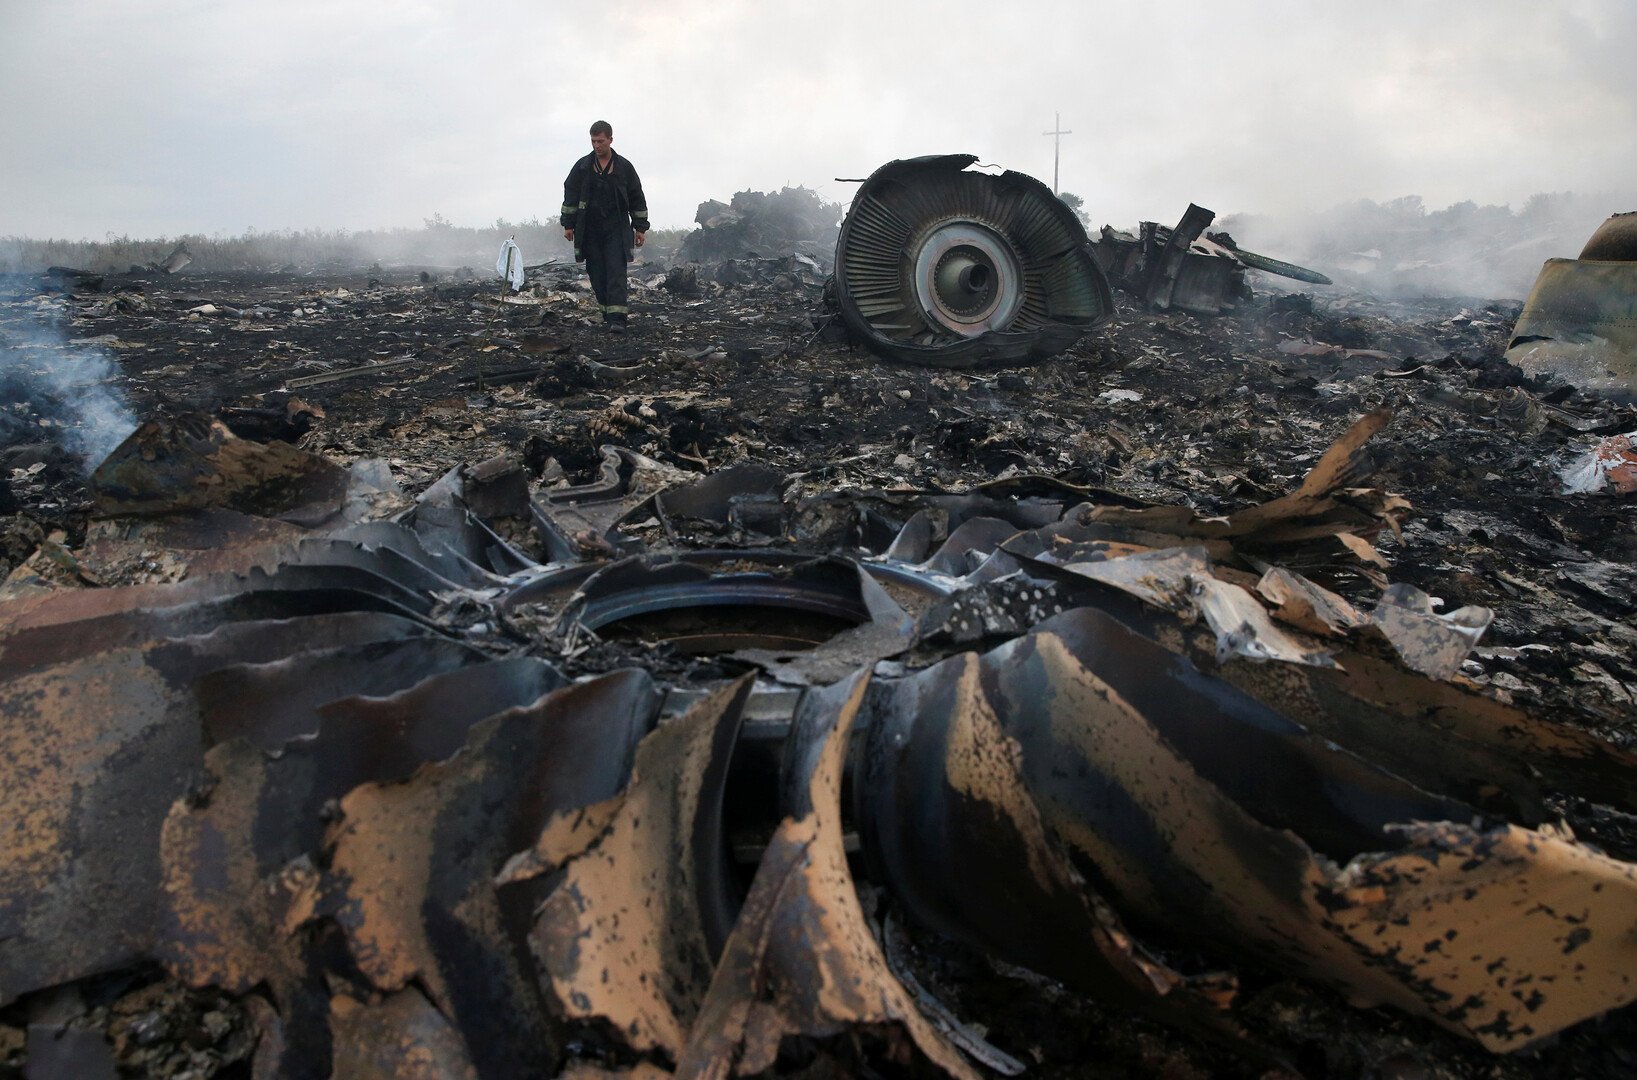 البرلمان الهولندي يطالب حكومة بلاده بالتحقيق في دور كييف في كارثة الطائرة الماليزية